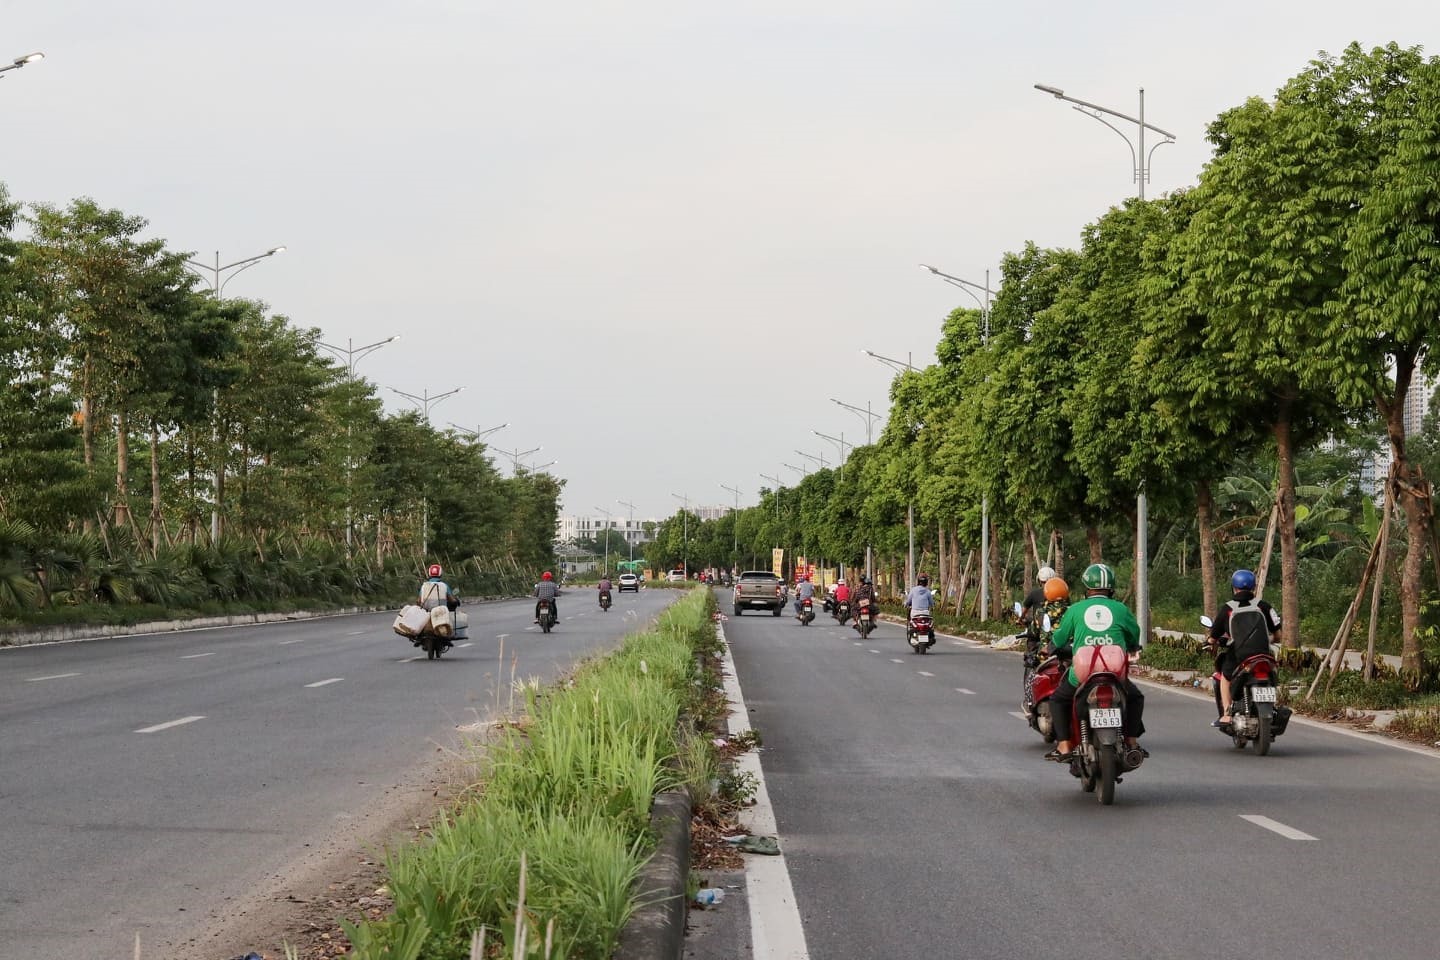 Dự án thi công Đại lộ Chu Văn An (hay còn gọi là tuyến đường Nguyễn Xiển - Xa La) đã được UBND Thành phố Hà Nội phê duyệt vào tháng 4.2011 và giao cho Công ty Cổ phần Bitexco làm chủ đầu tư. Đến tháng 5.2014, Đại lộ bắt đầu được triển khai với tổng mức đầu tư vốn là 1.475 tỉ đồng.